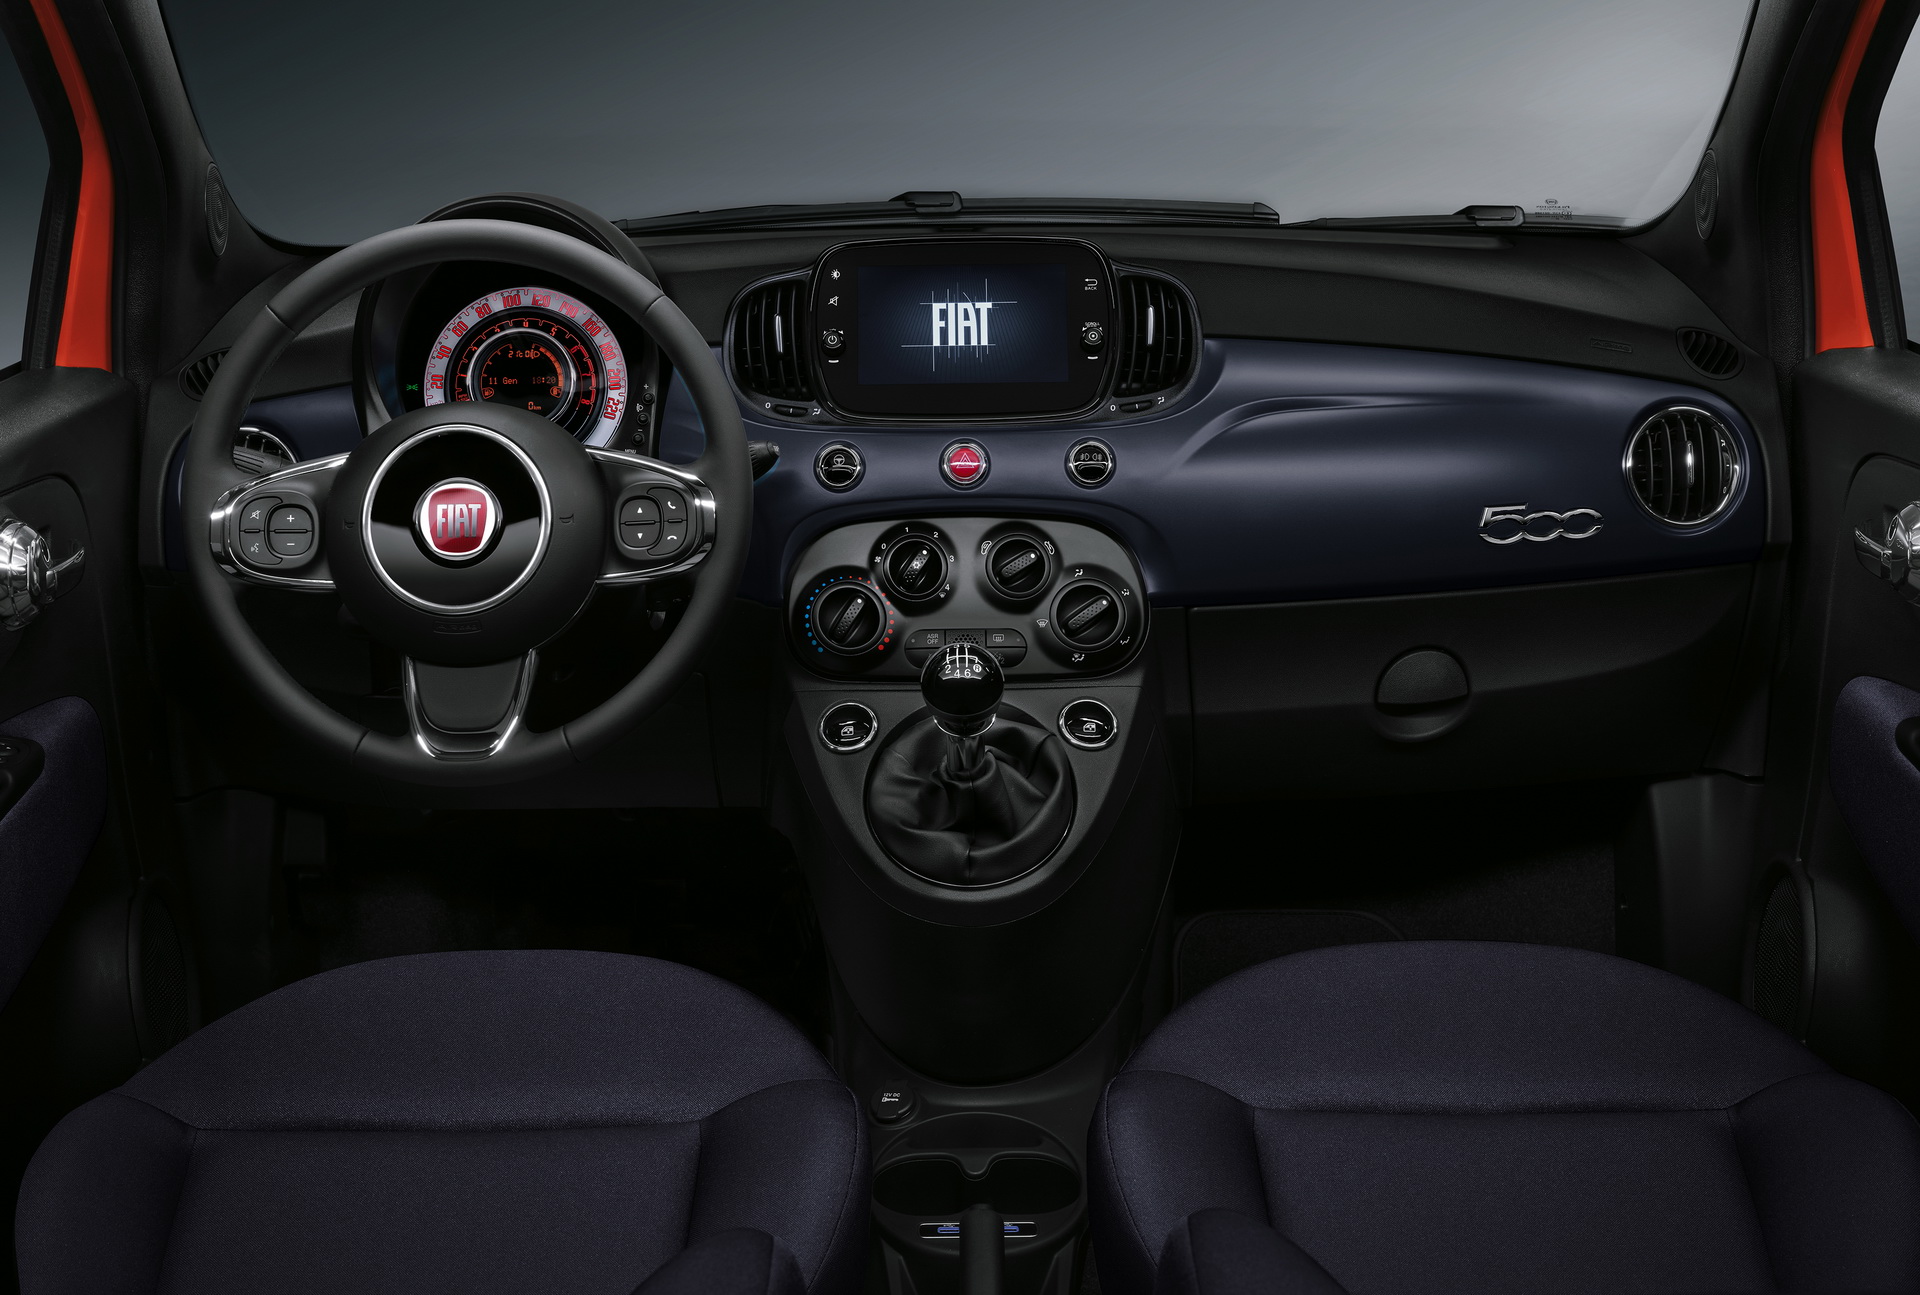 Yeni Fiat 500 model ailesi resim galerisi (10.01.2021)